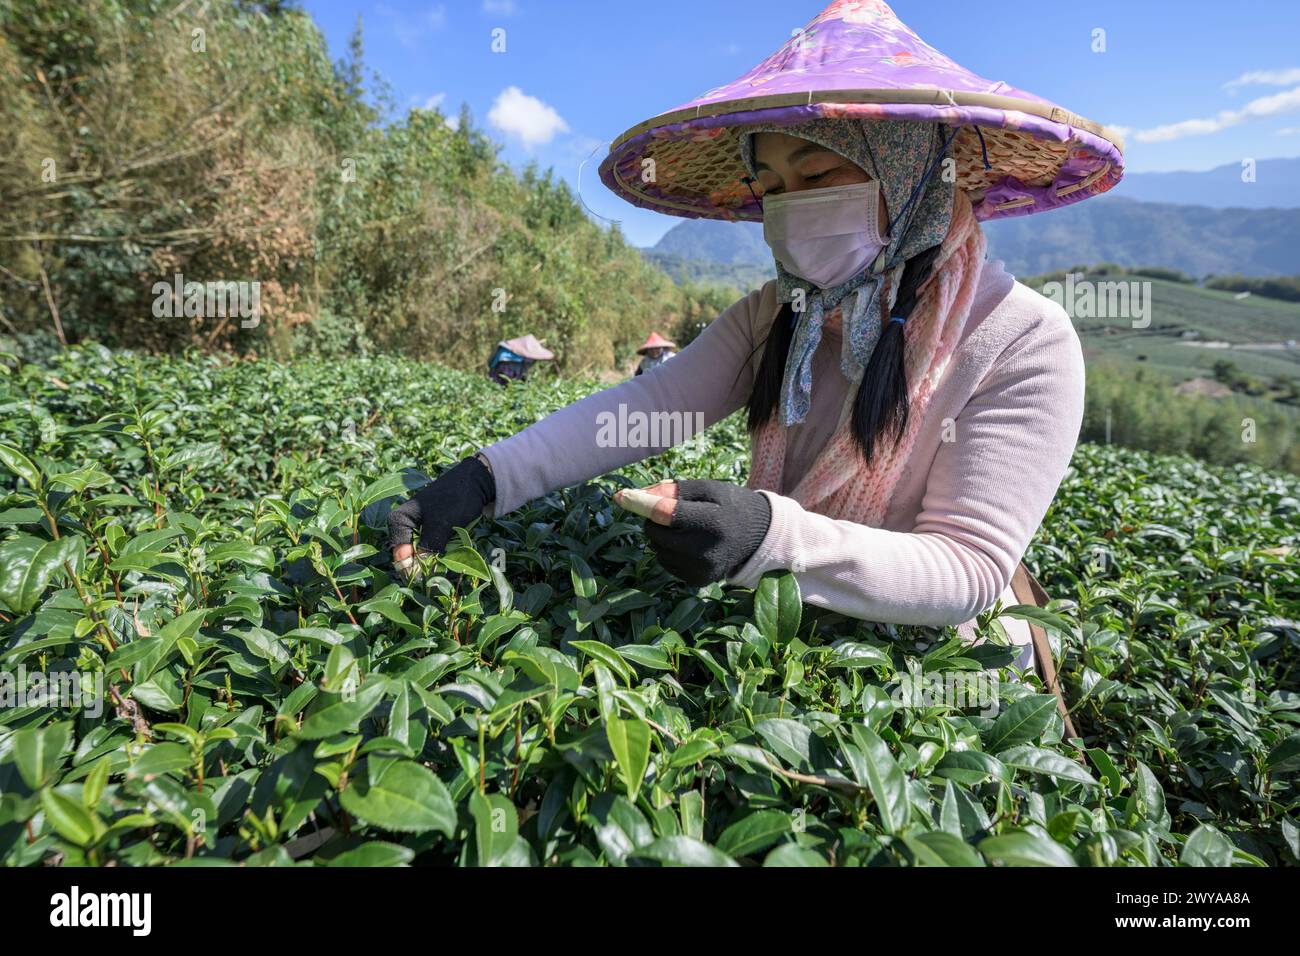 Raccoglitori di tè migranti che raccolgono le foglie in una vasta piantagione di tè Foto Stock